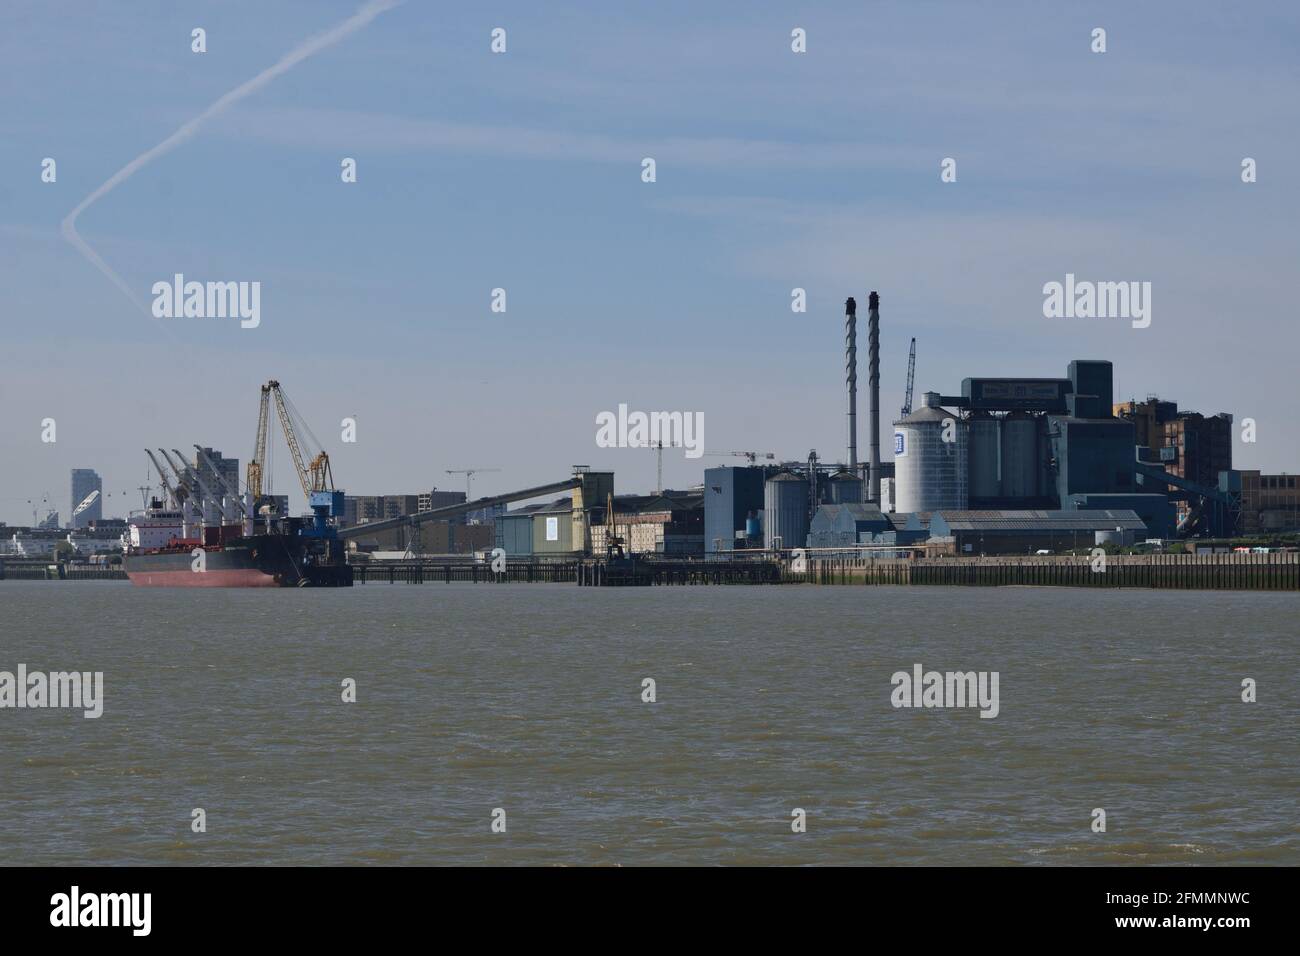 Ansicht des Entladens von Frachtschiffen an der Thames Refinery Wharf von Tate & Lyle und der Fabrik in Silvertown, London, England. Stockfoto